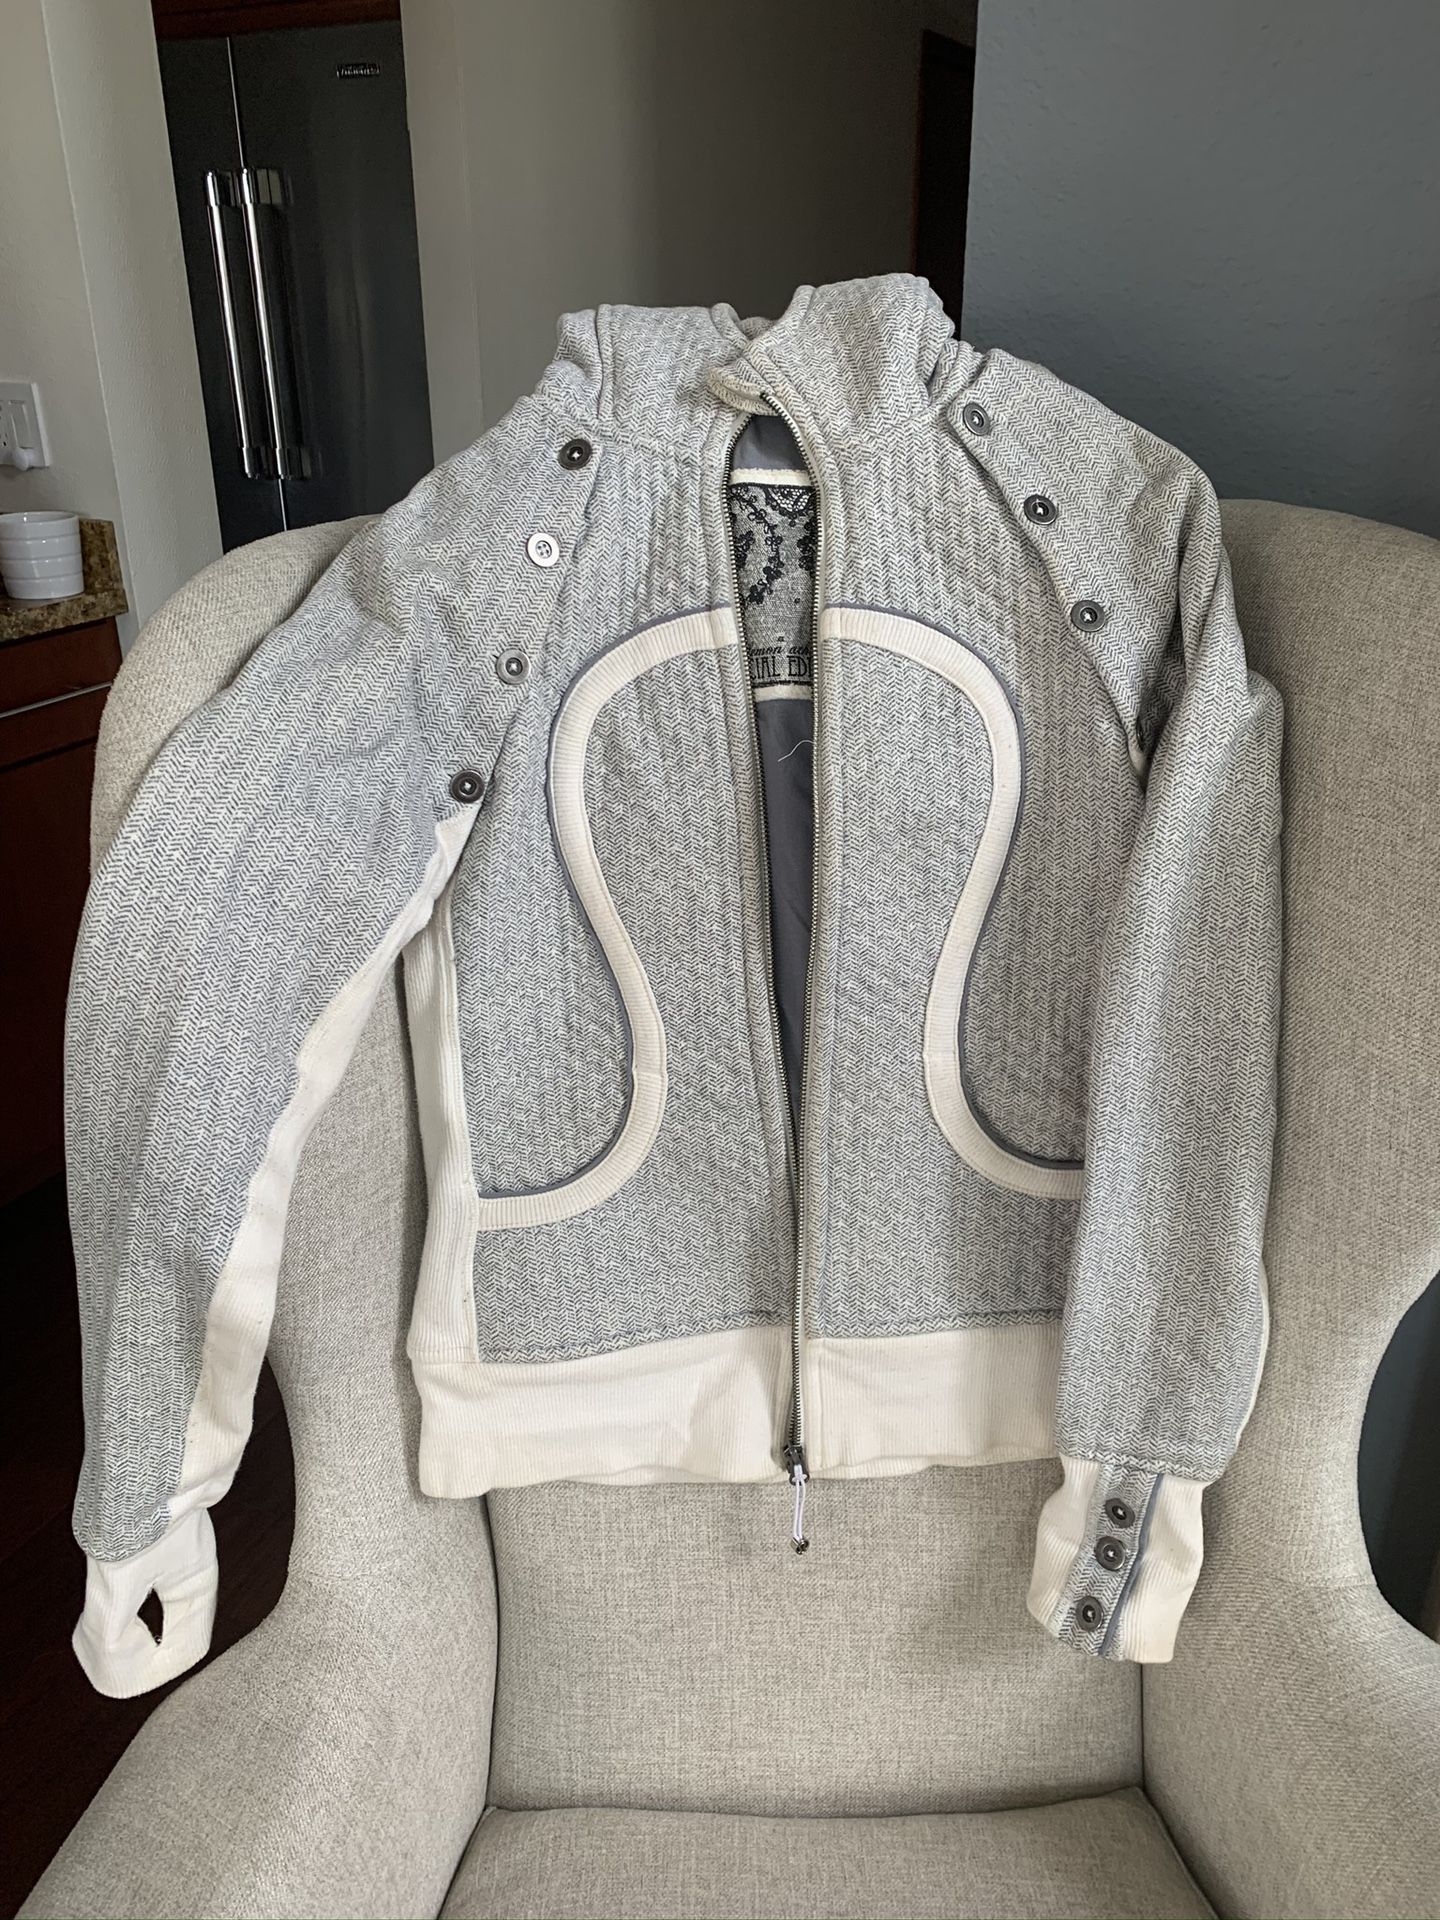 Lulu Lemon Jacket/Vest - zip up hoodie